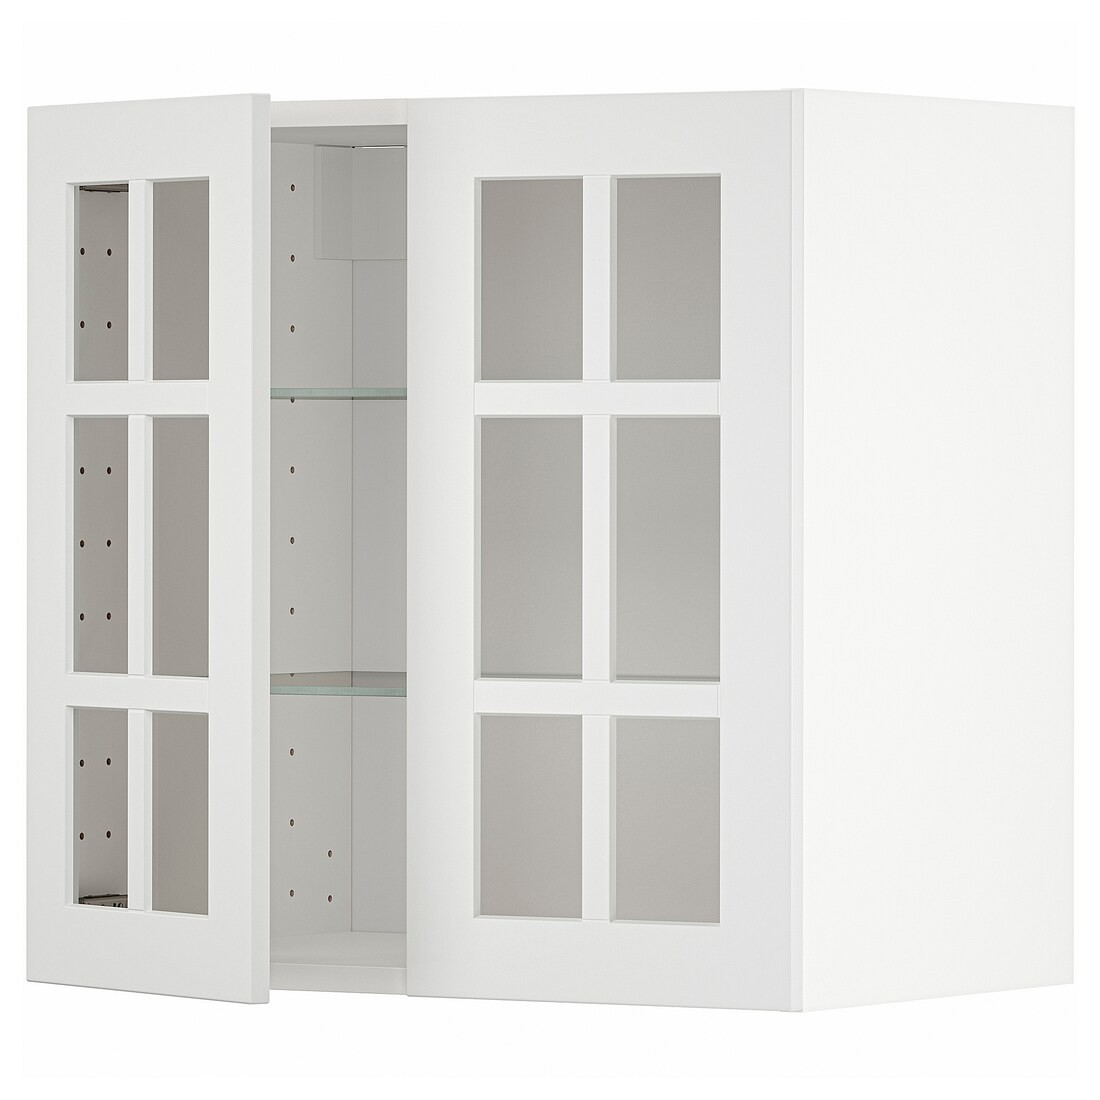 METOD МЕТОД Навесной шкаф, белый / Stensund белый, 60x60 см